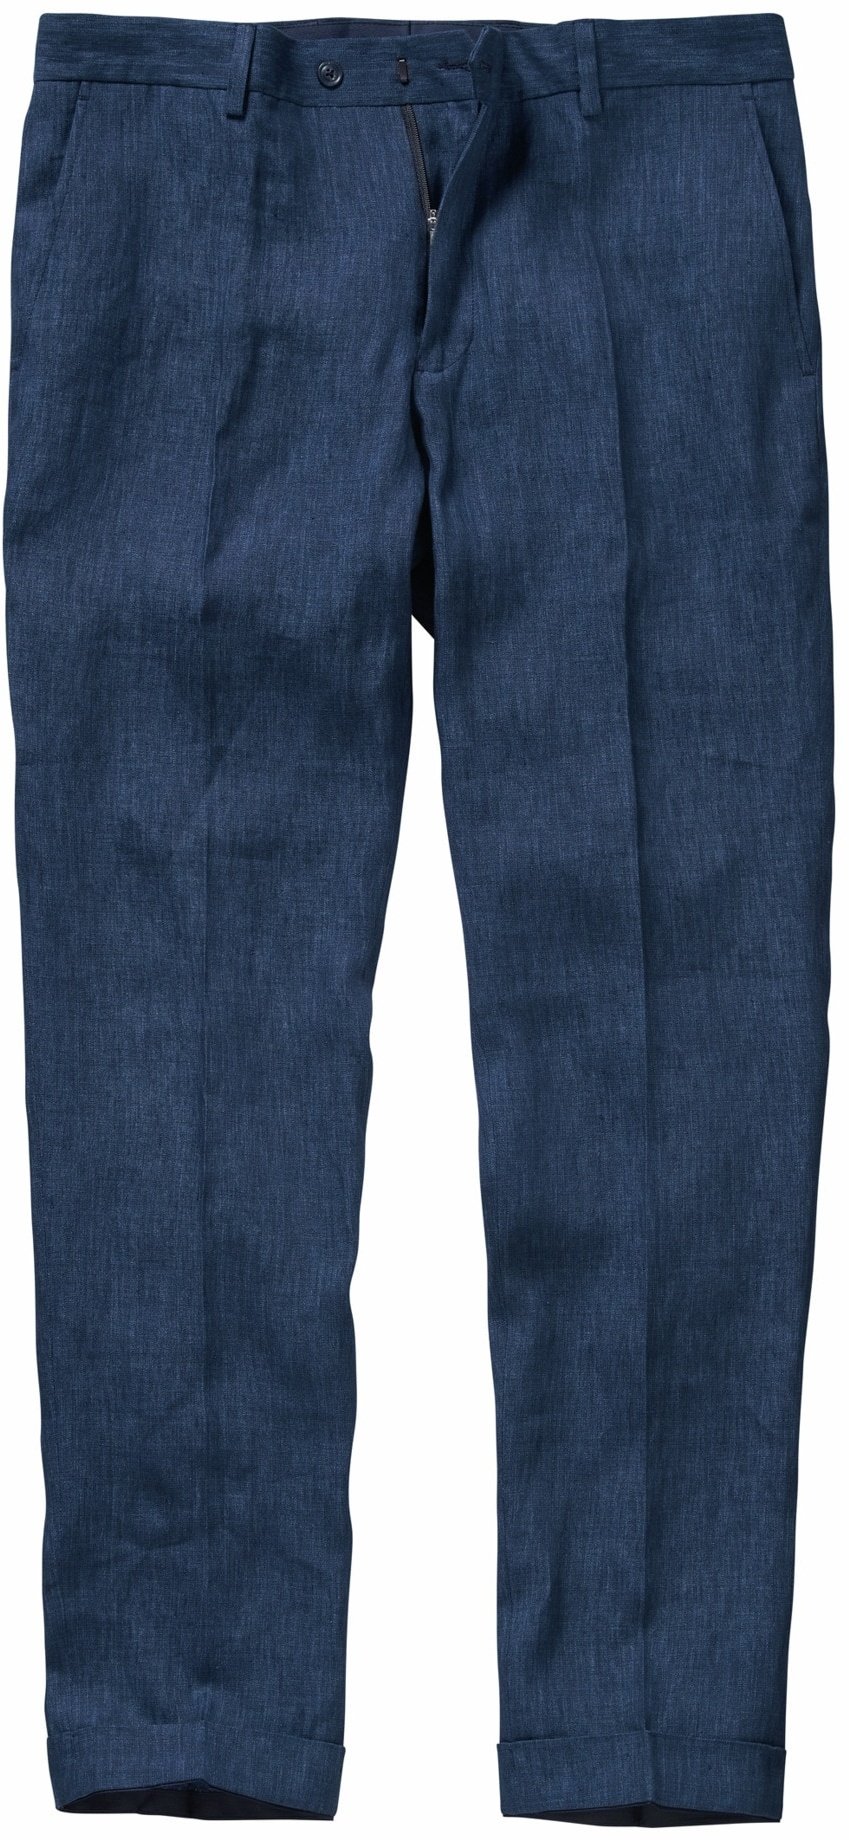 Mey & Edlich Herren Hose Spielzug-Anzughose blau 98 - 98